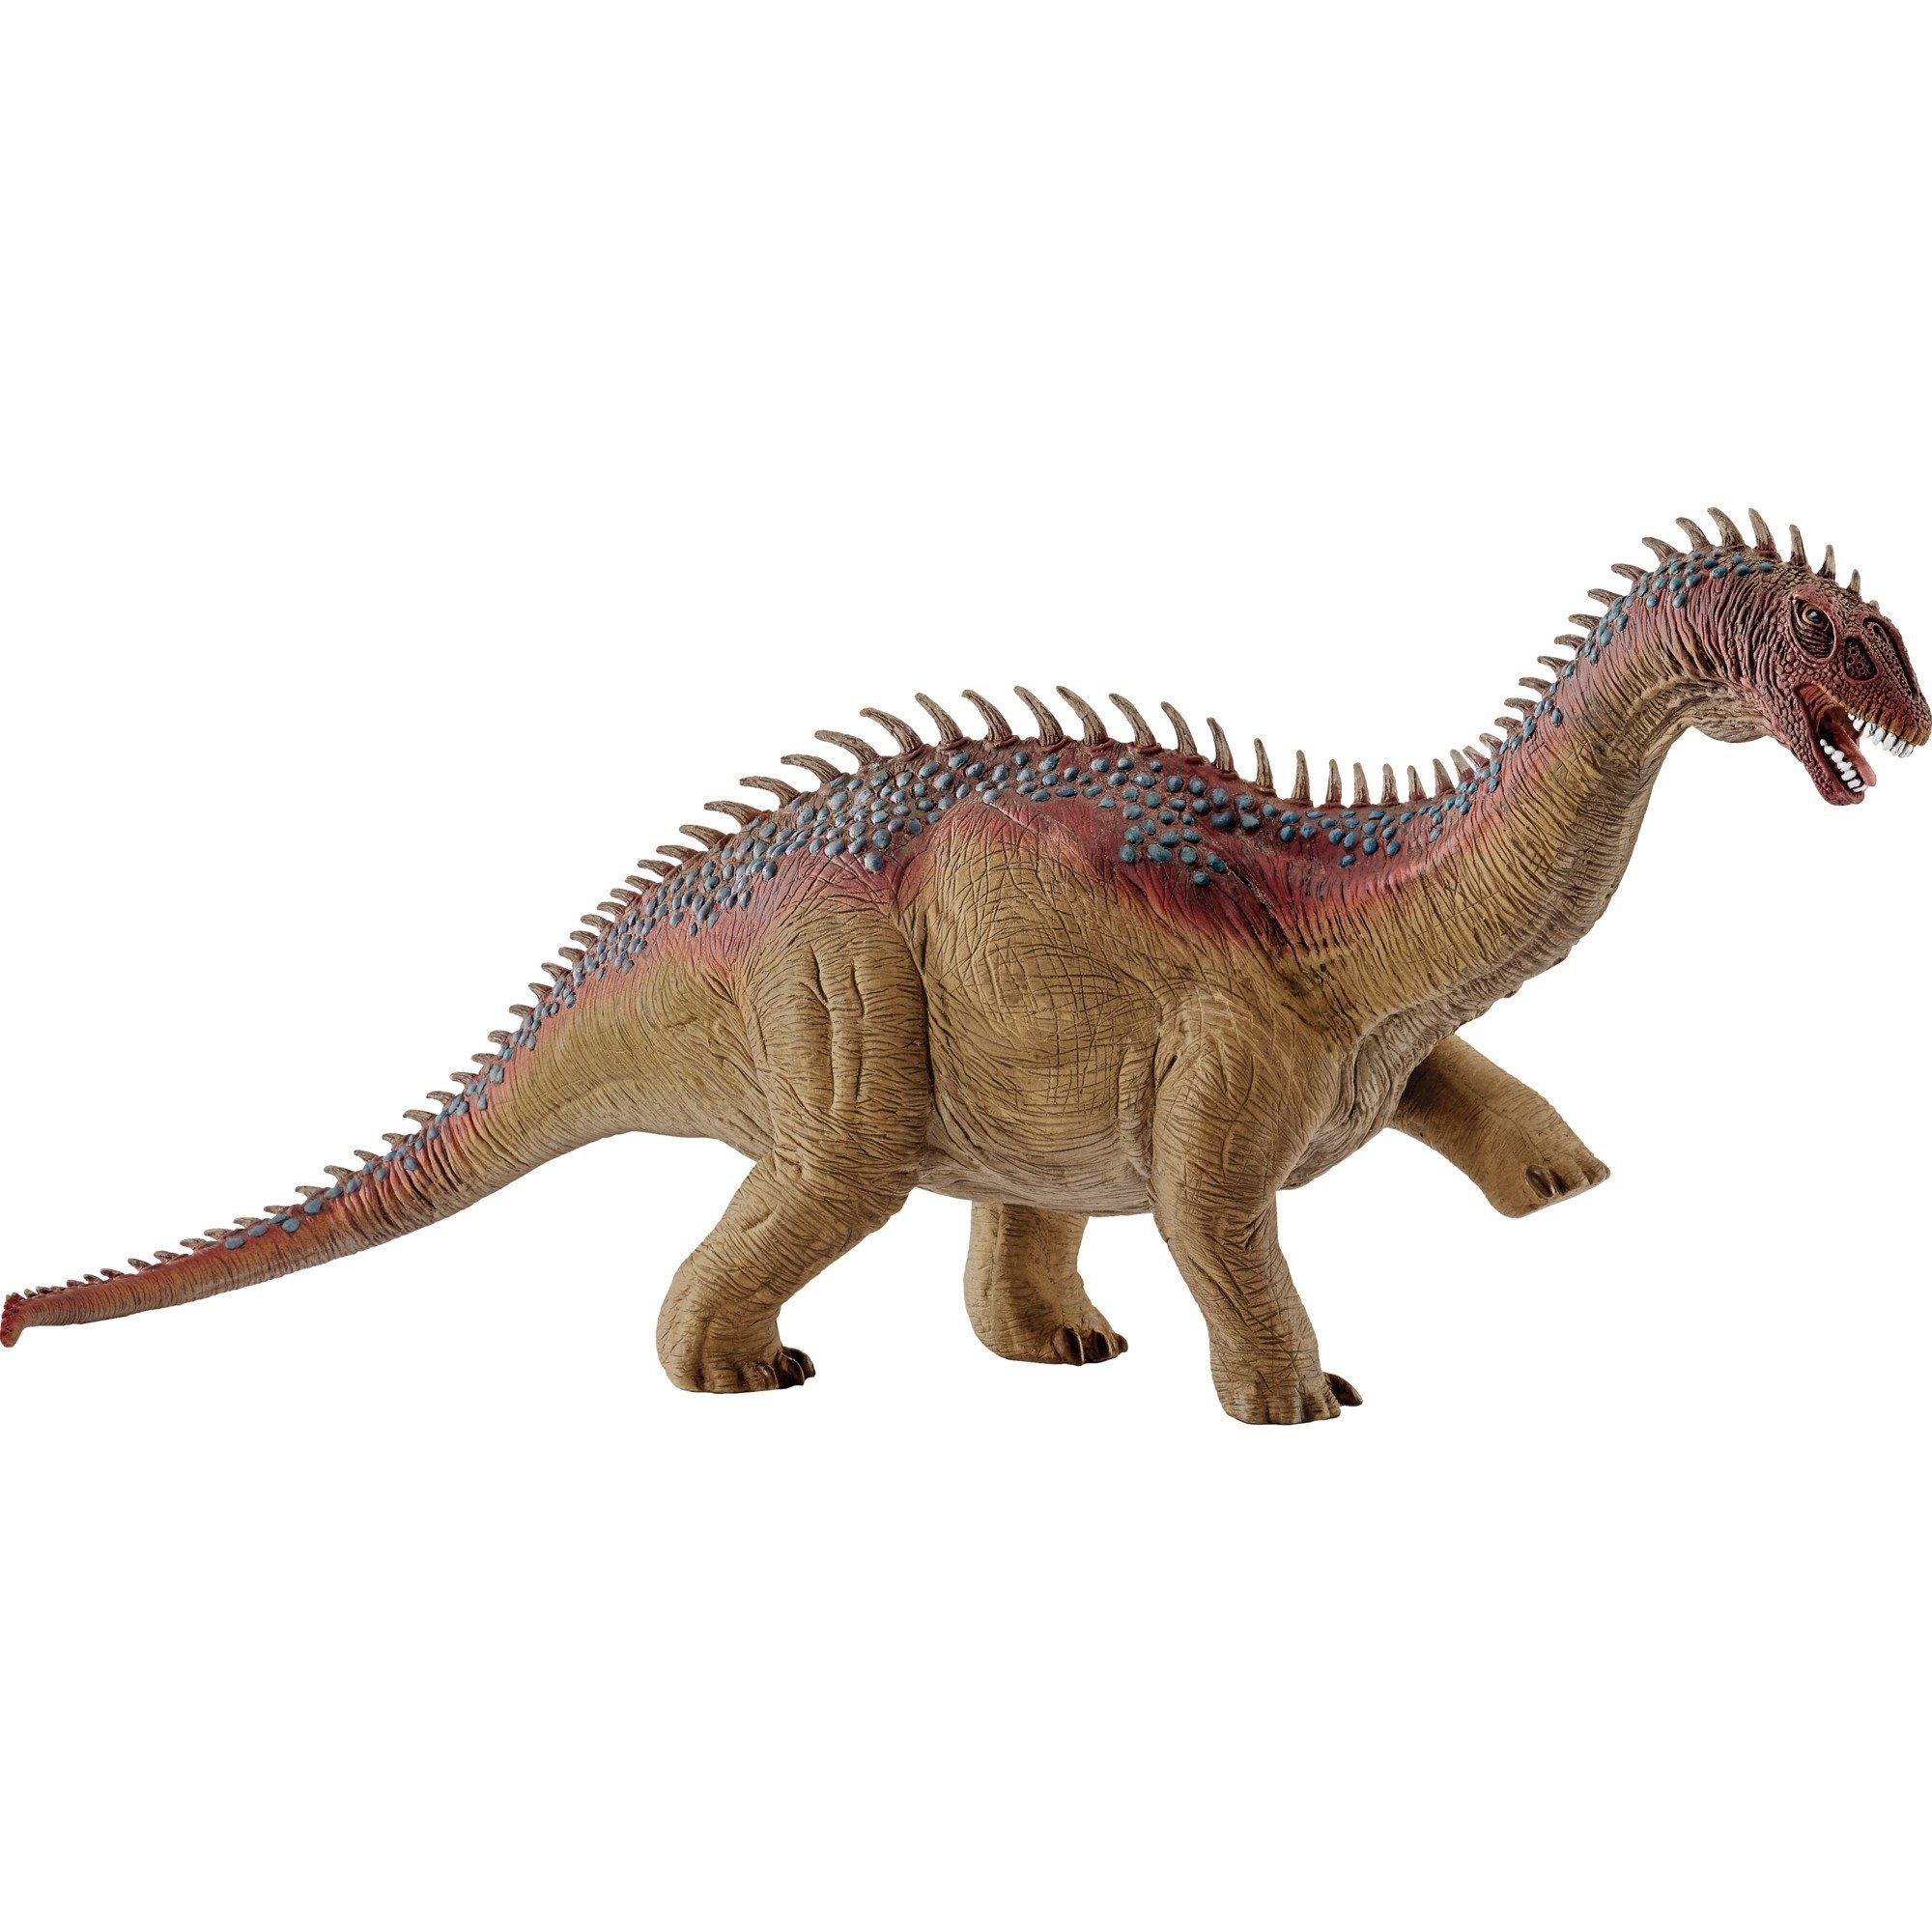 Image of Alternate - Barapasaurus, Spielfigur online einkaufen bei Alternate